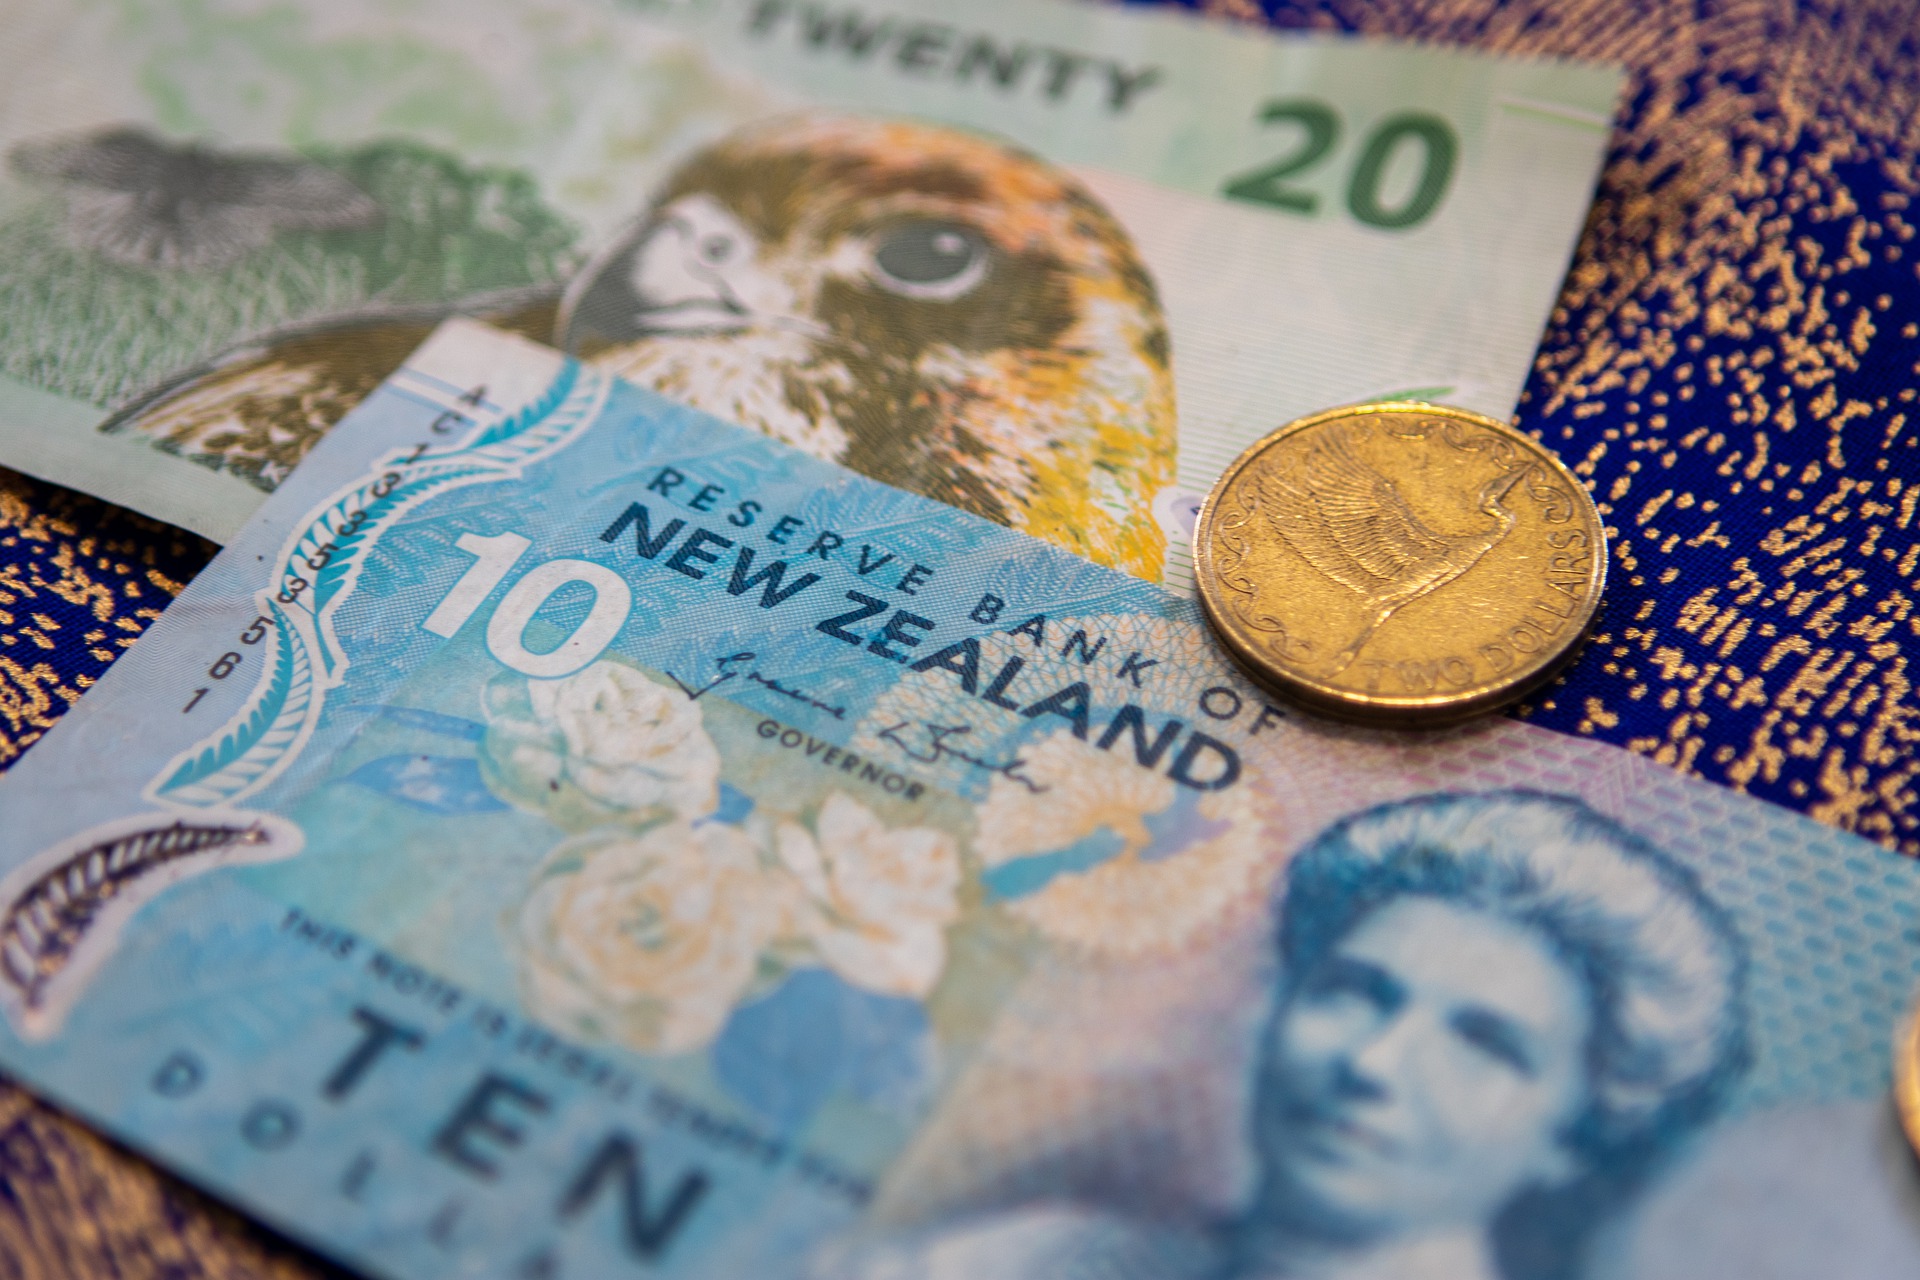 NZ- Dollar- currency-g0c33f28ad_1920